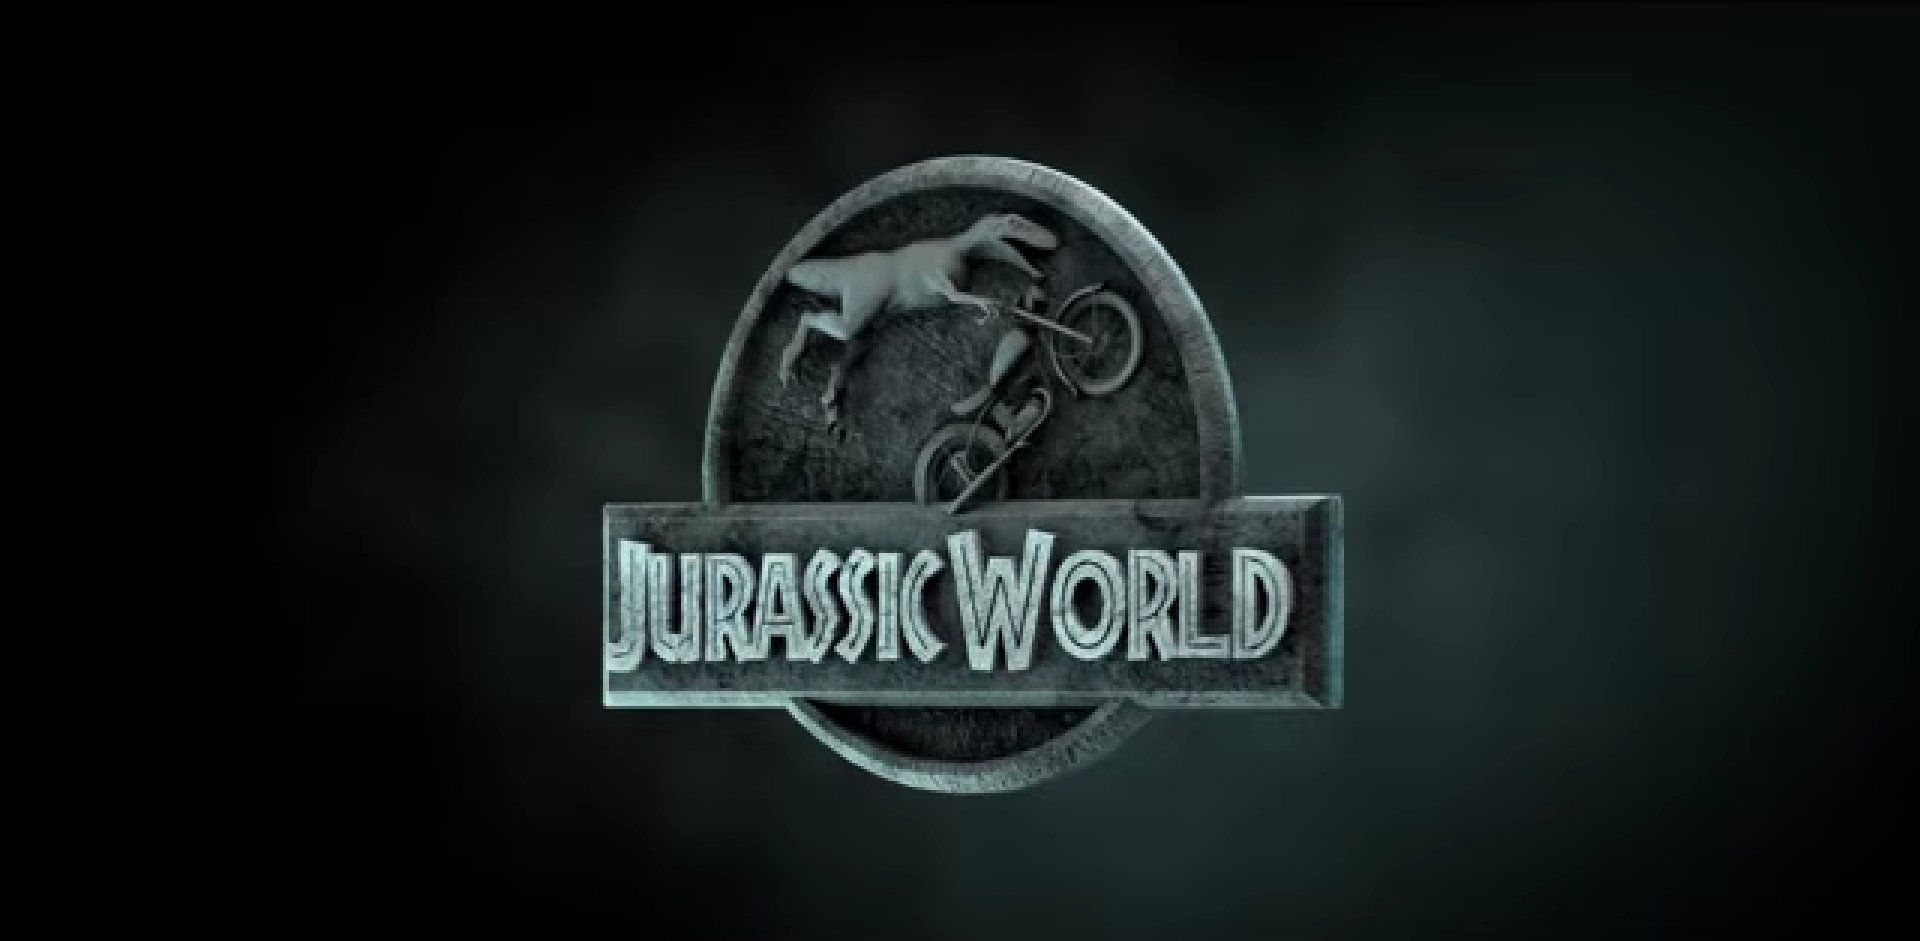 Une parodie hilarante de Jurassic World avec des dinosaures à motos